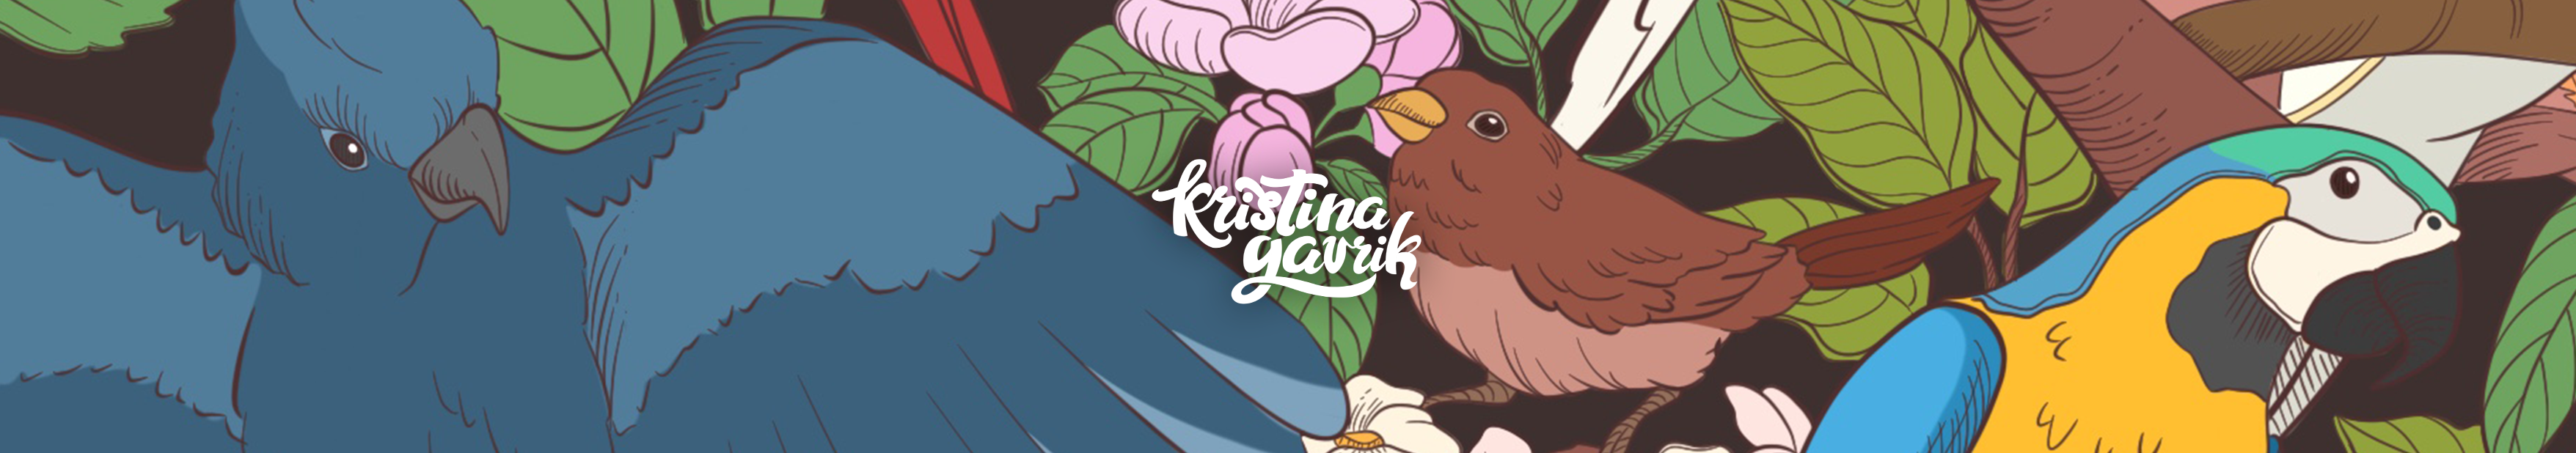 Kristina Gavrik profil başlığı